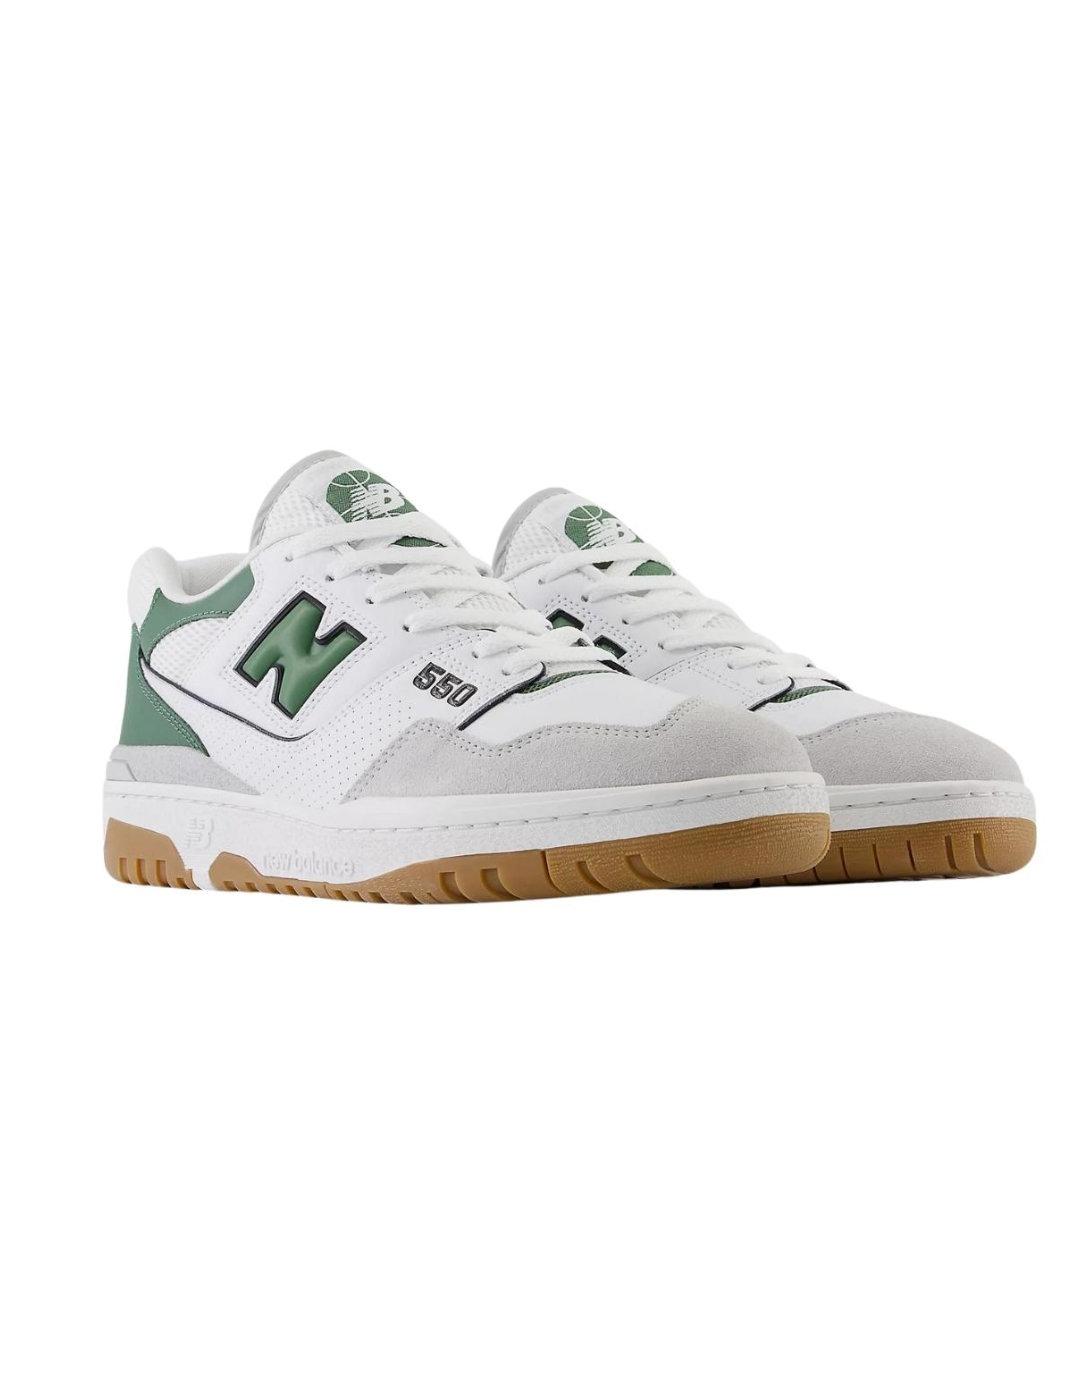 Zapatillas New Balance 550 blanco y verde para hombre